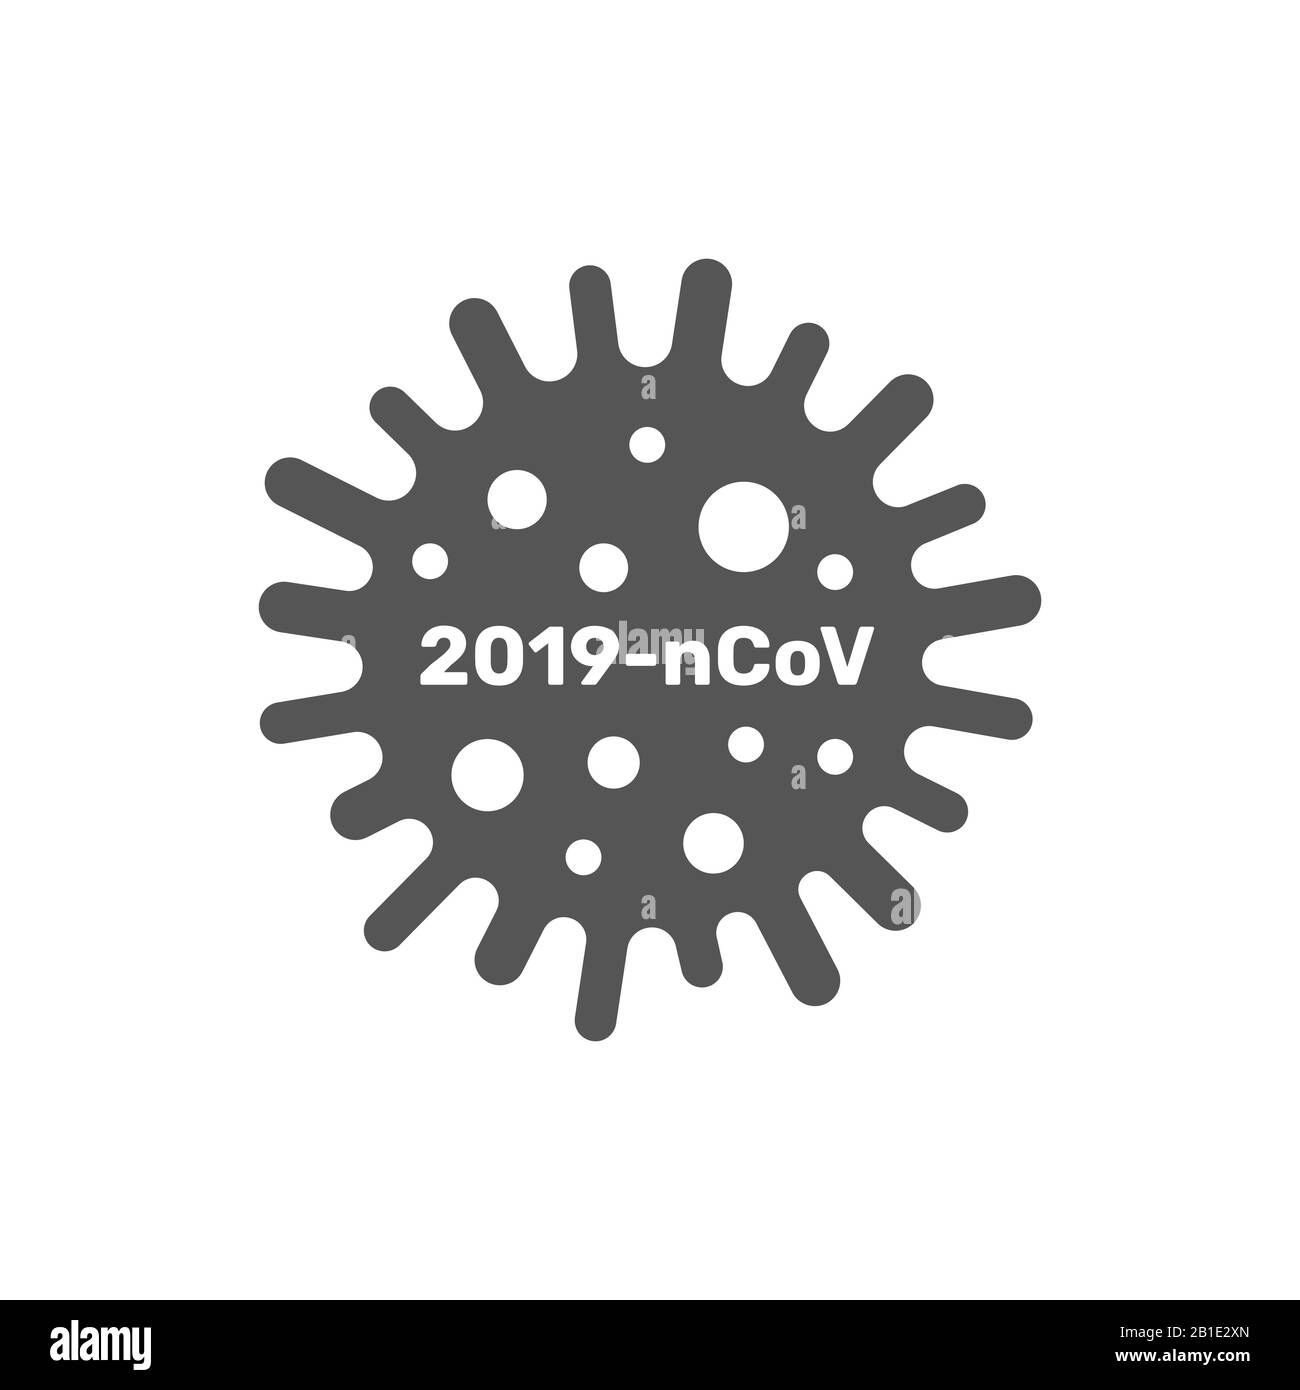 Coronavirus cell, 2019-nCoV. China pathogen respiratory coronavirus 2019-nCoV in a world, Dangerous chinese nCoV coronavirus, SARS pandemic risk alert Stock Vector